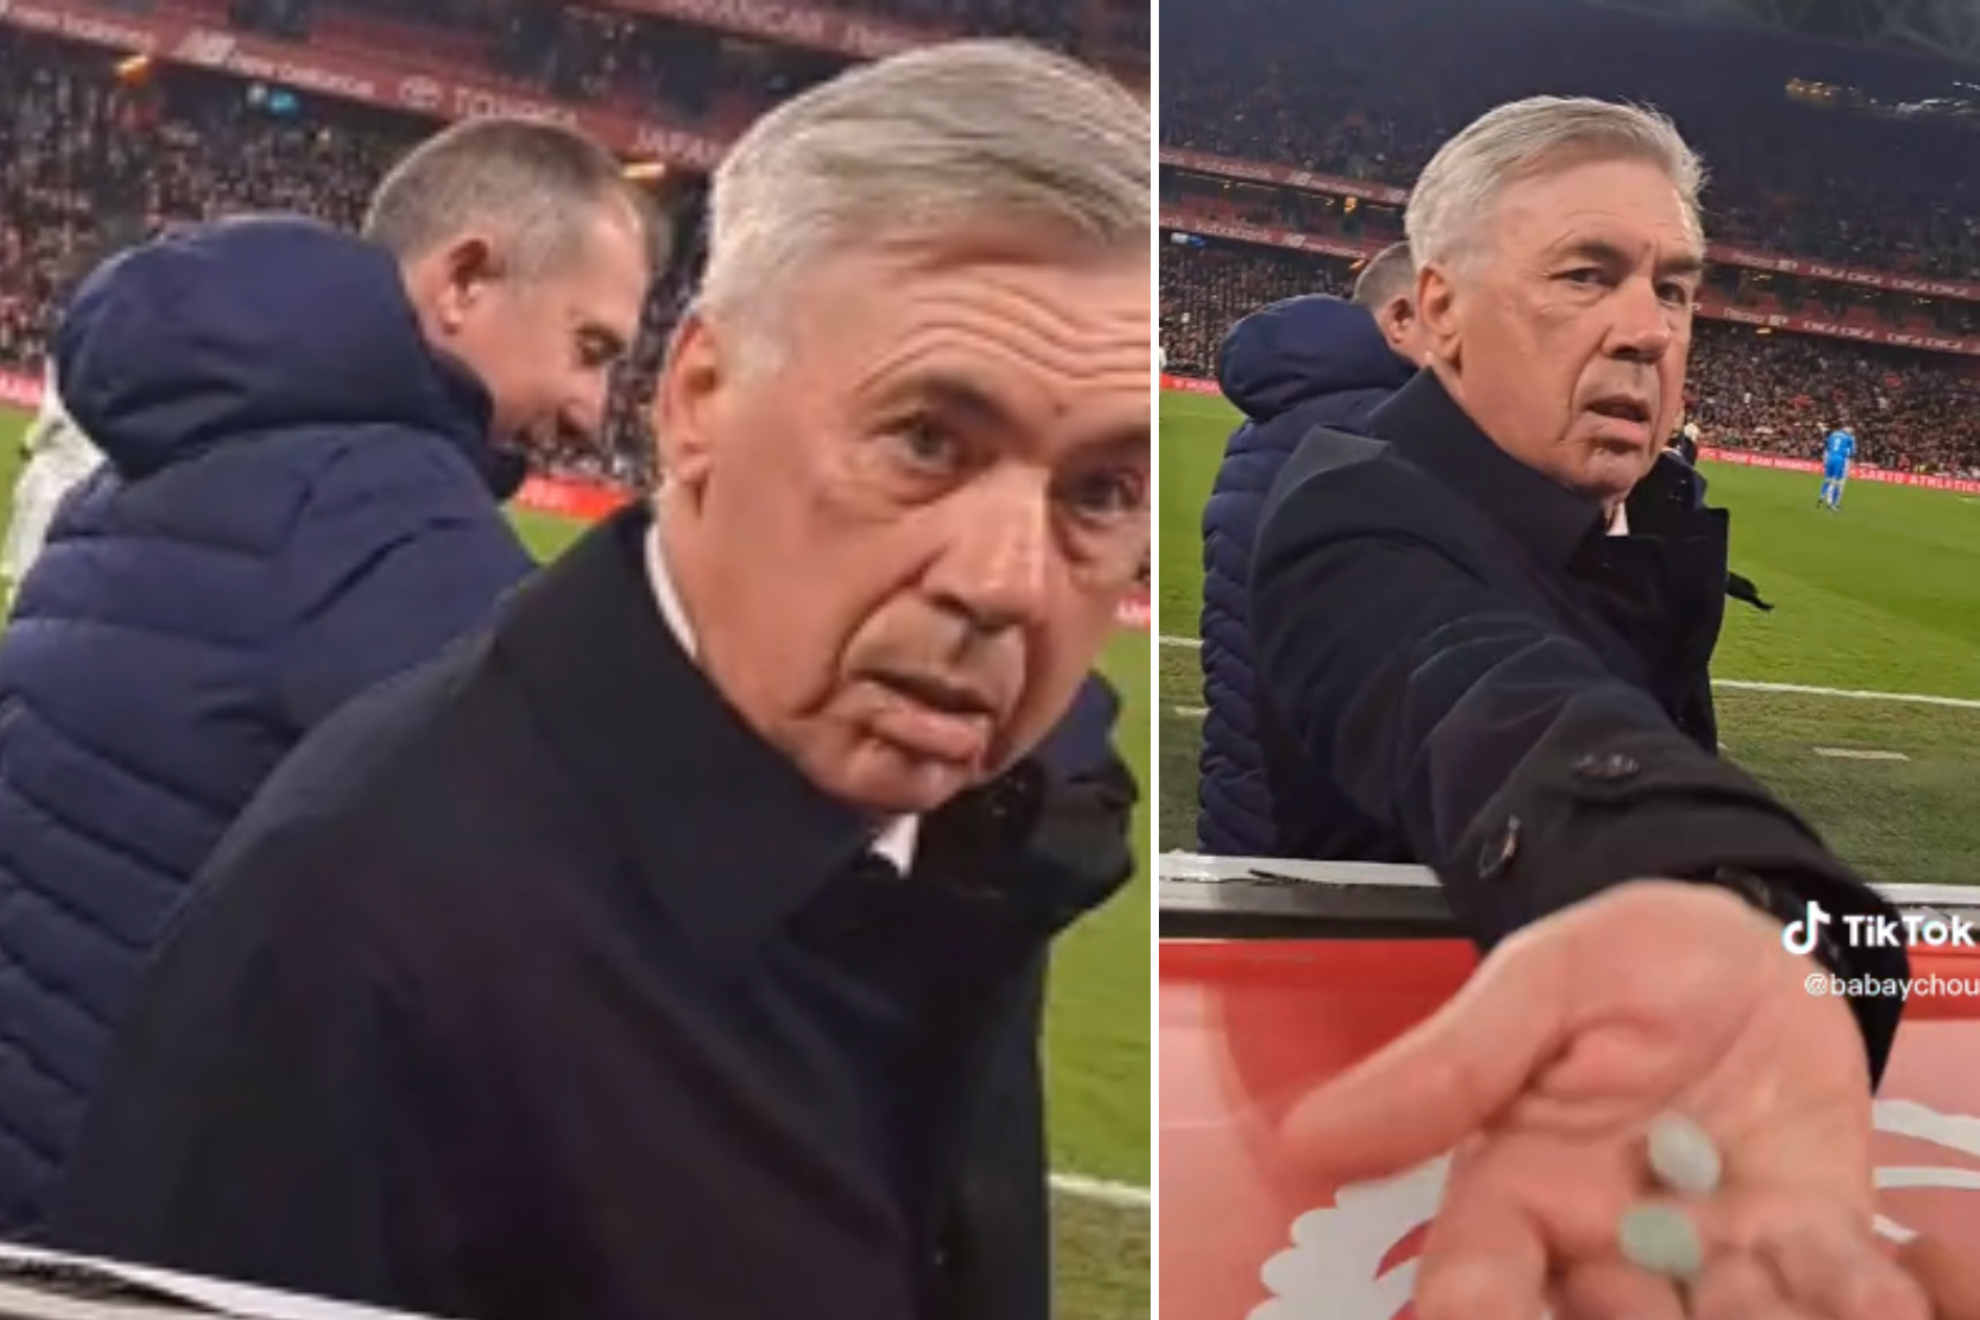 El surrealista momento de Ancelotti con un aficionado: "Dame un chicle, dame un chicle"